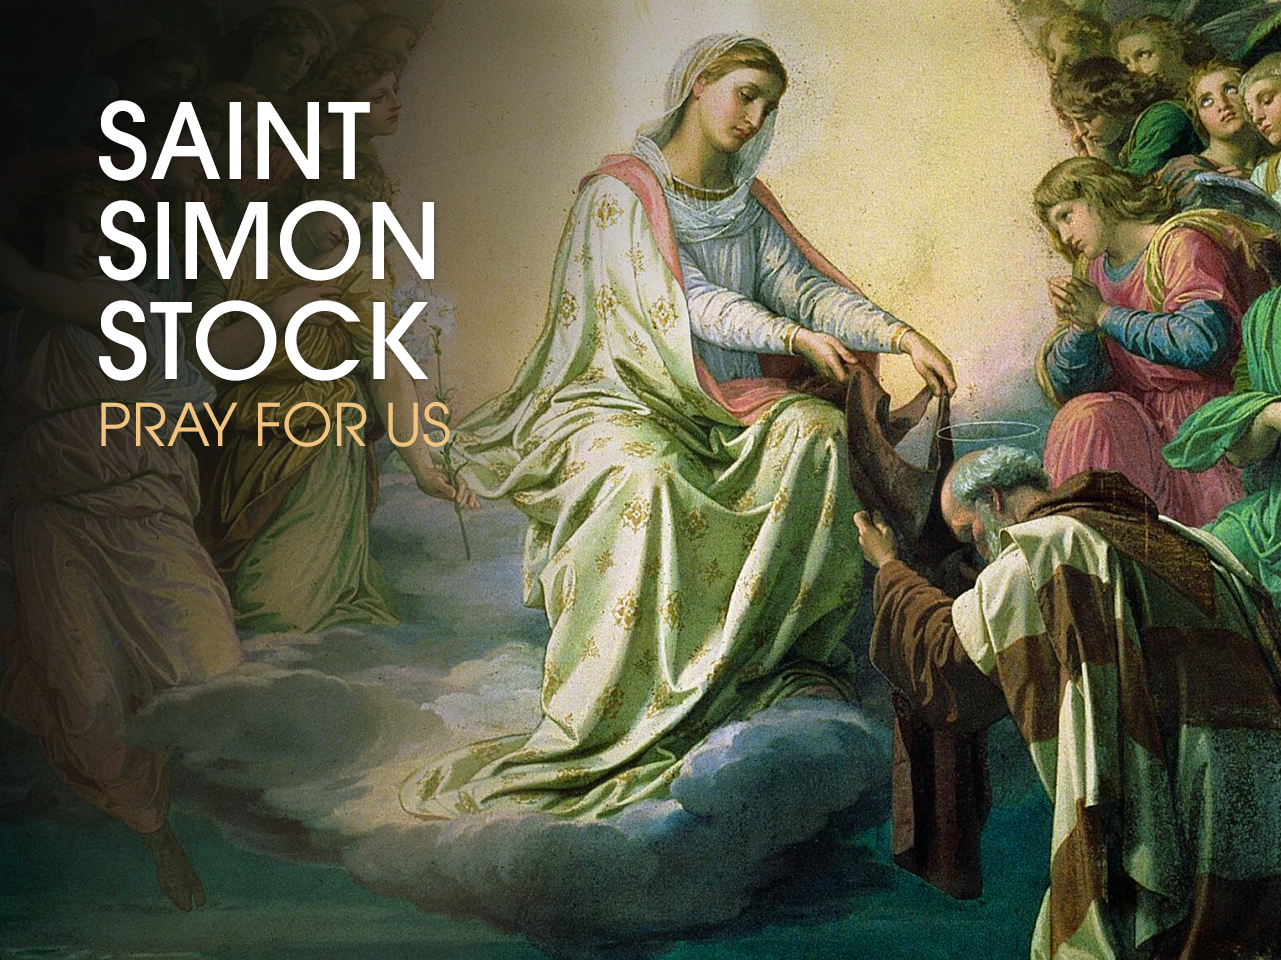 St. Simon Stock